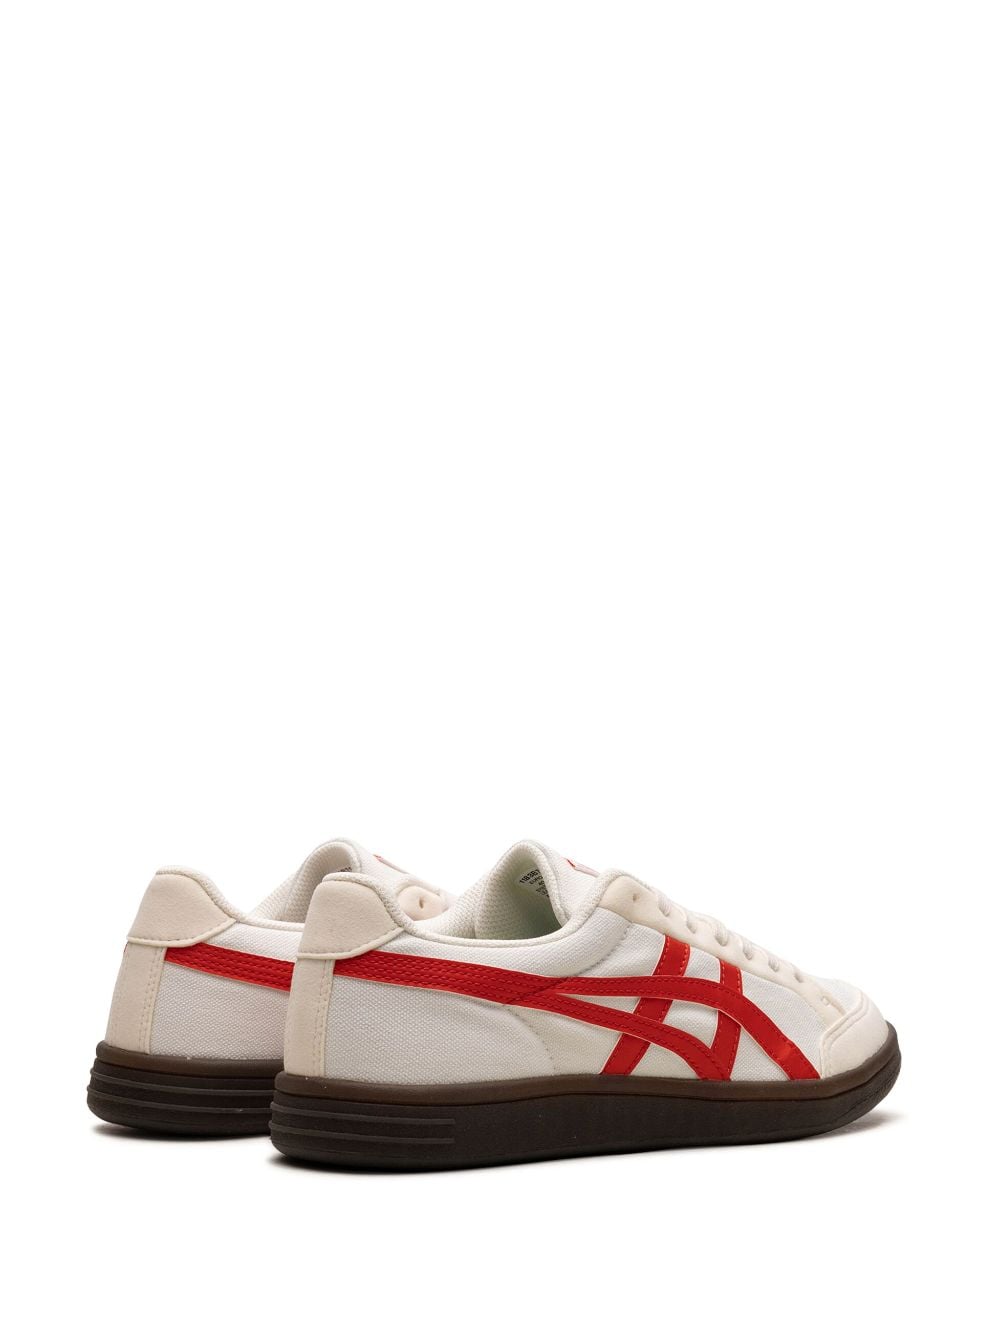 Shop Onitsuka Tiger Advanti "white/red" Sneakers